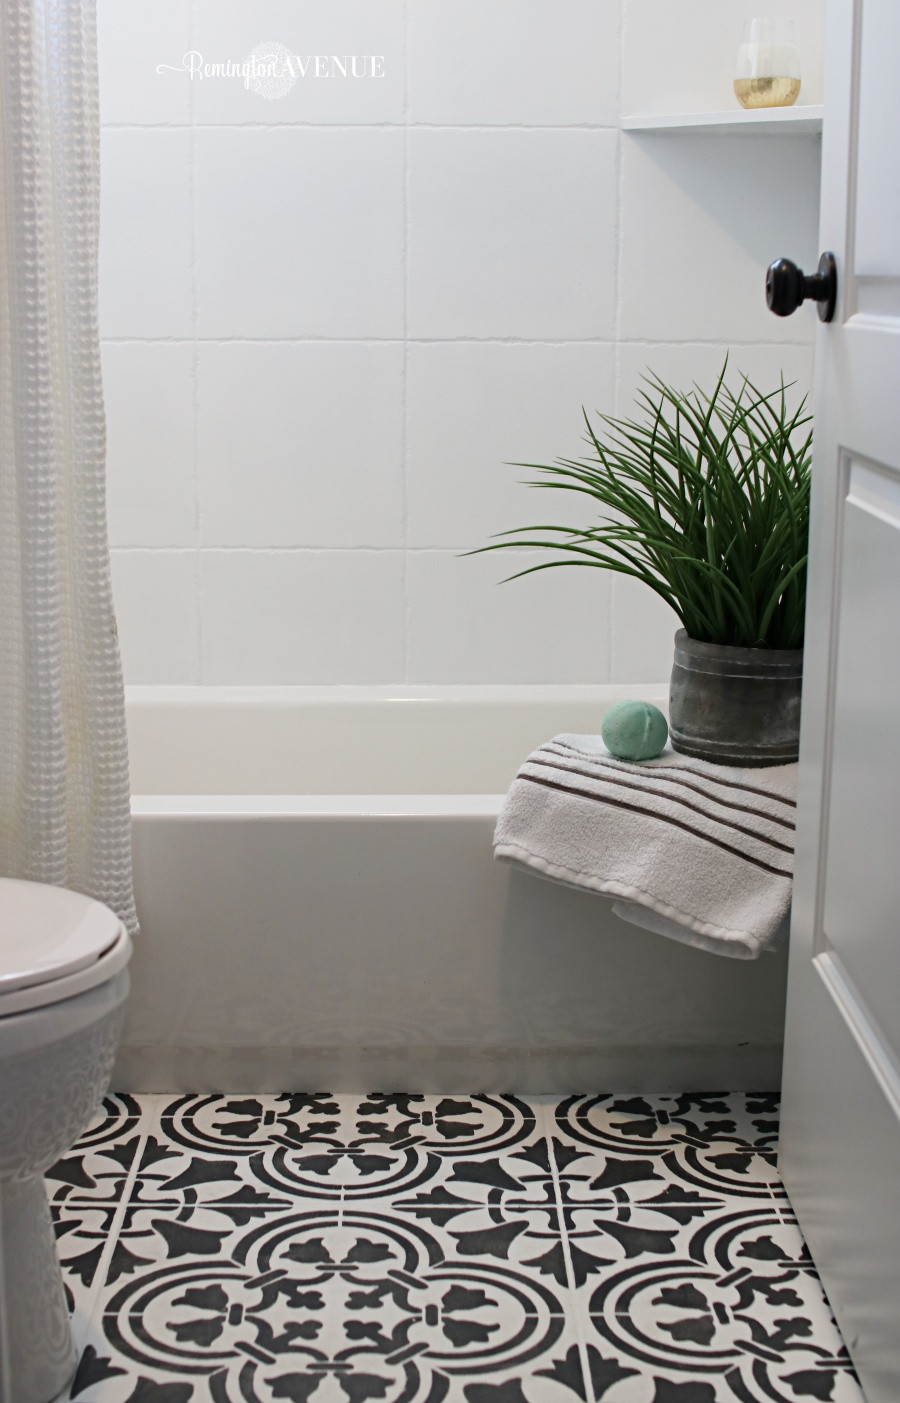 Painted Bathroom Tile Floor
 How to Paint Shower Tile Remington Avenue